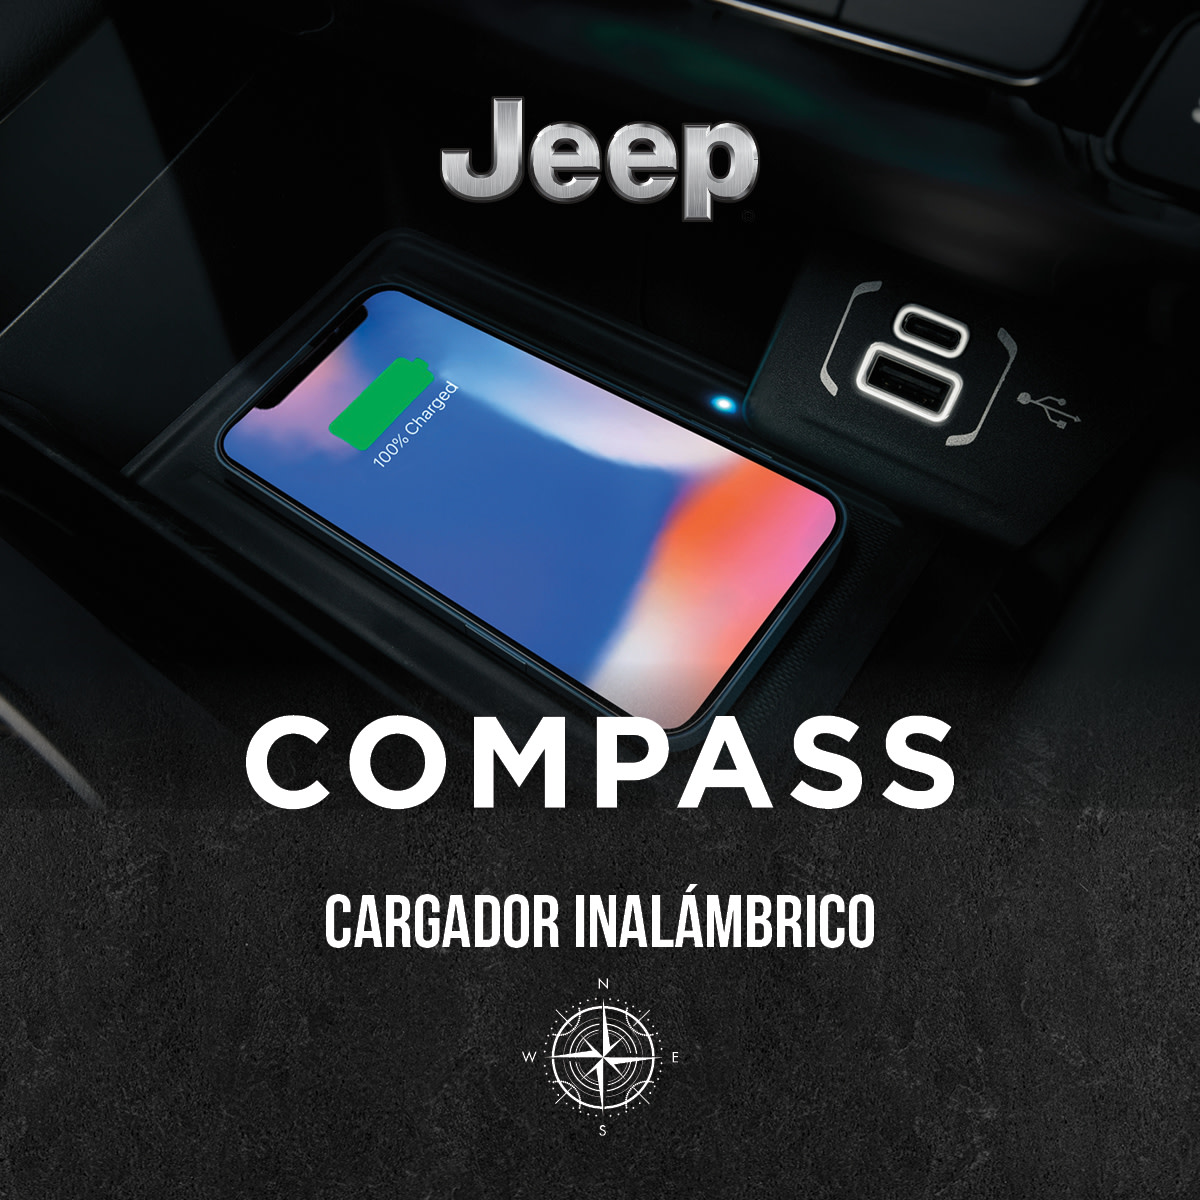 En plena aventura, es crucial tener tu celular siempre cargado. 🔋 Gracias a la tecnología y el #CargadorWireless del #JeepCompass, olvídate de las preocupaciones. ¿Listo para disfrutar sin límites? 😉 

🚨Búscalo en tu concesionario más cercano: jeep.com/pr/find-a-deal…